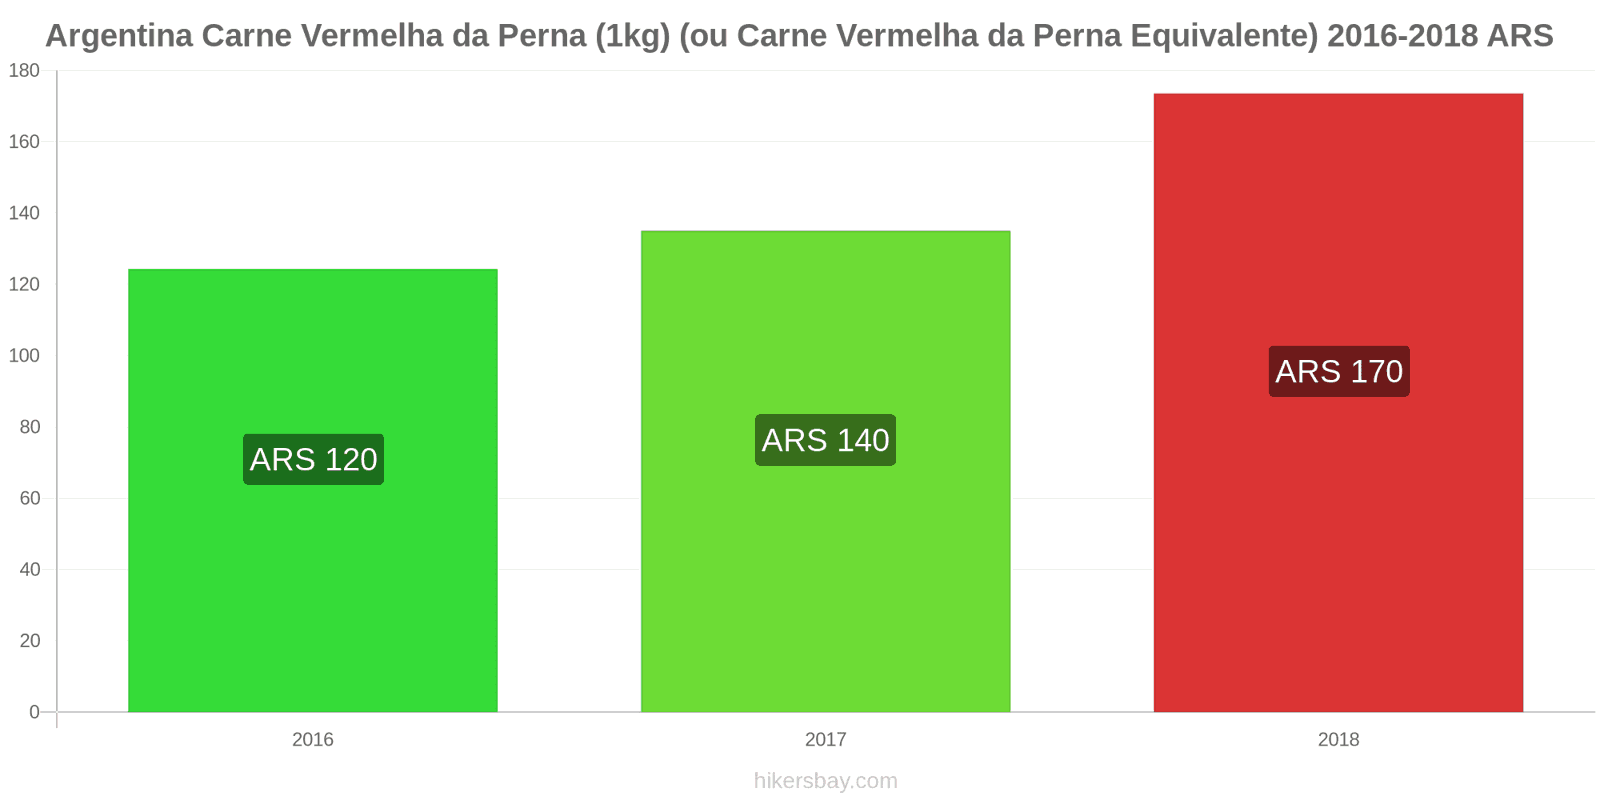 Argentina mudanças de preços Carne de bovino (1kg) (ou carne vermelha similar) hikersbay.com